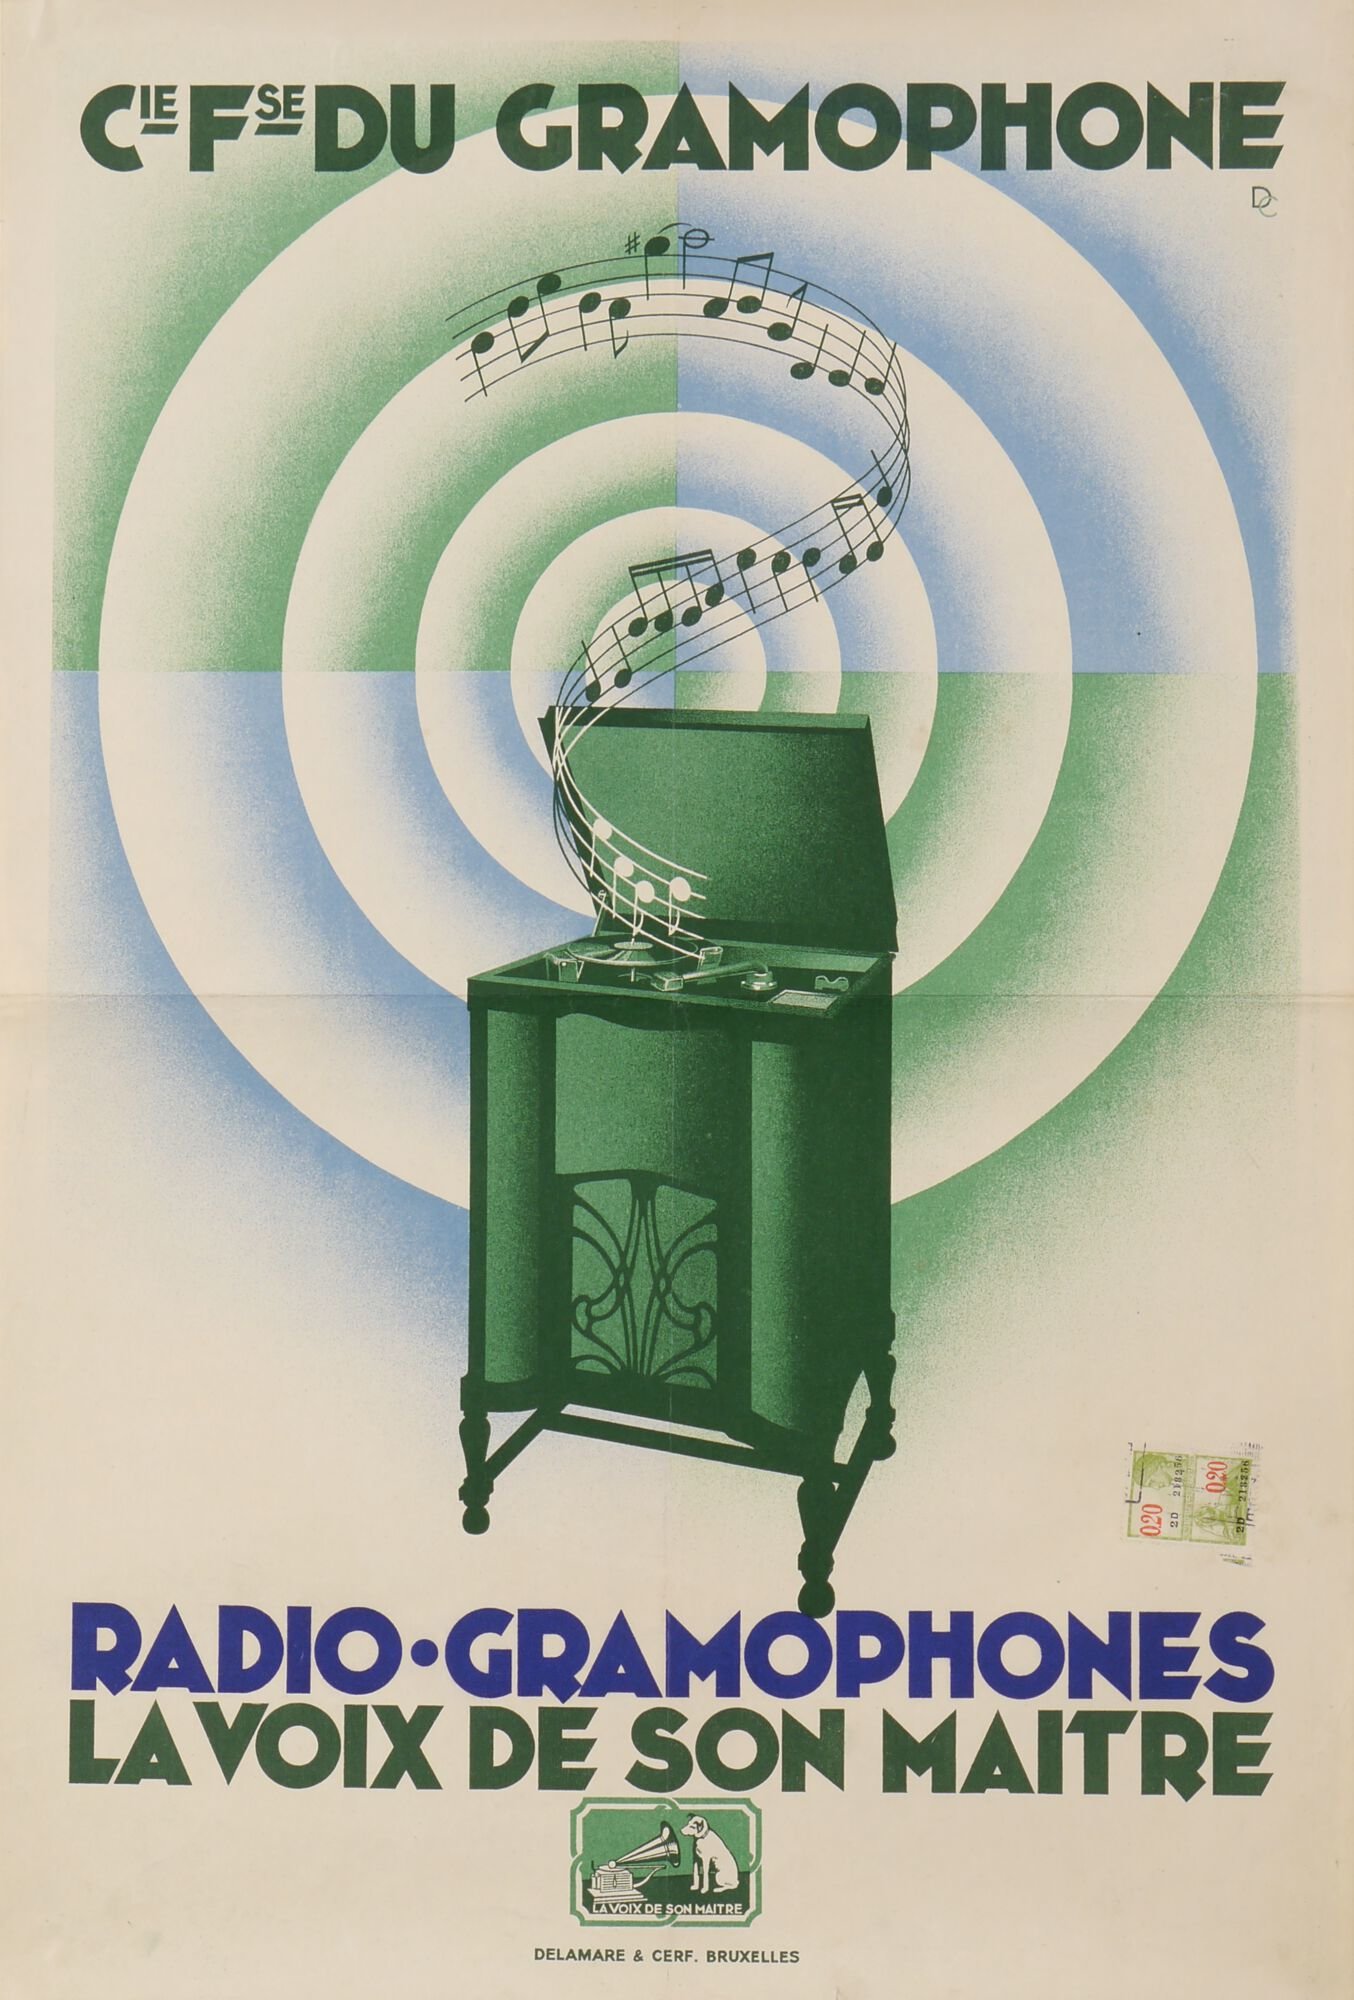 Reclameaffiche voor radio-grammofoonspeler van het merk La Voix de son Maître